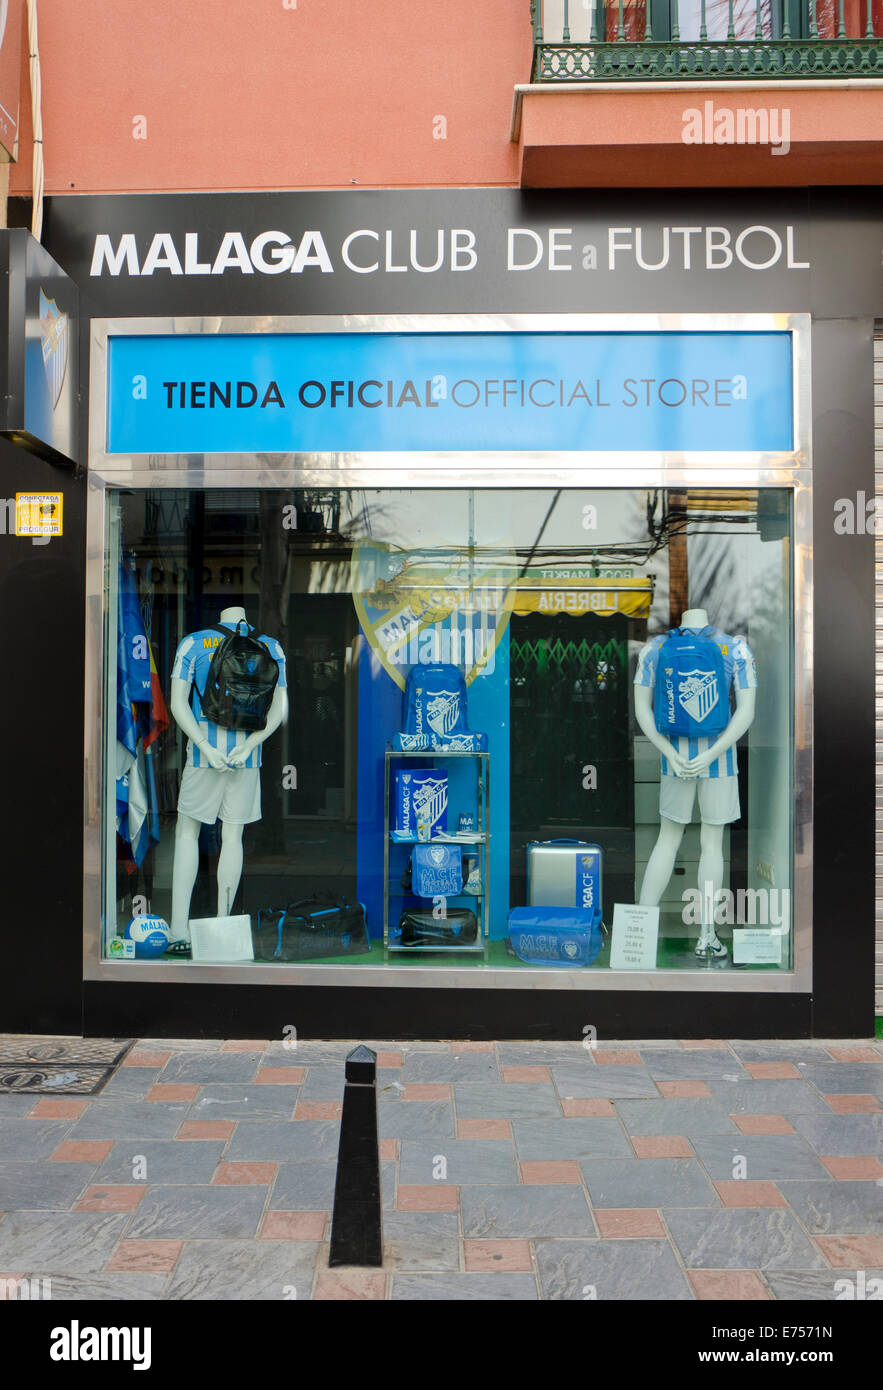 La boutique officielle du Club de football de Malaga, Malaga, l'équipe de soccer football club, de l'Espagne. Banque D'Images